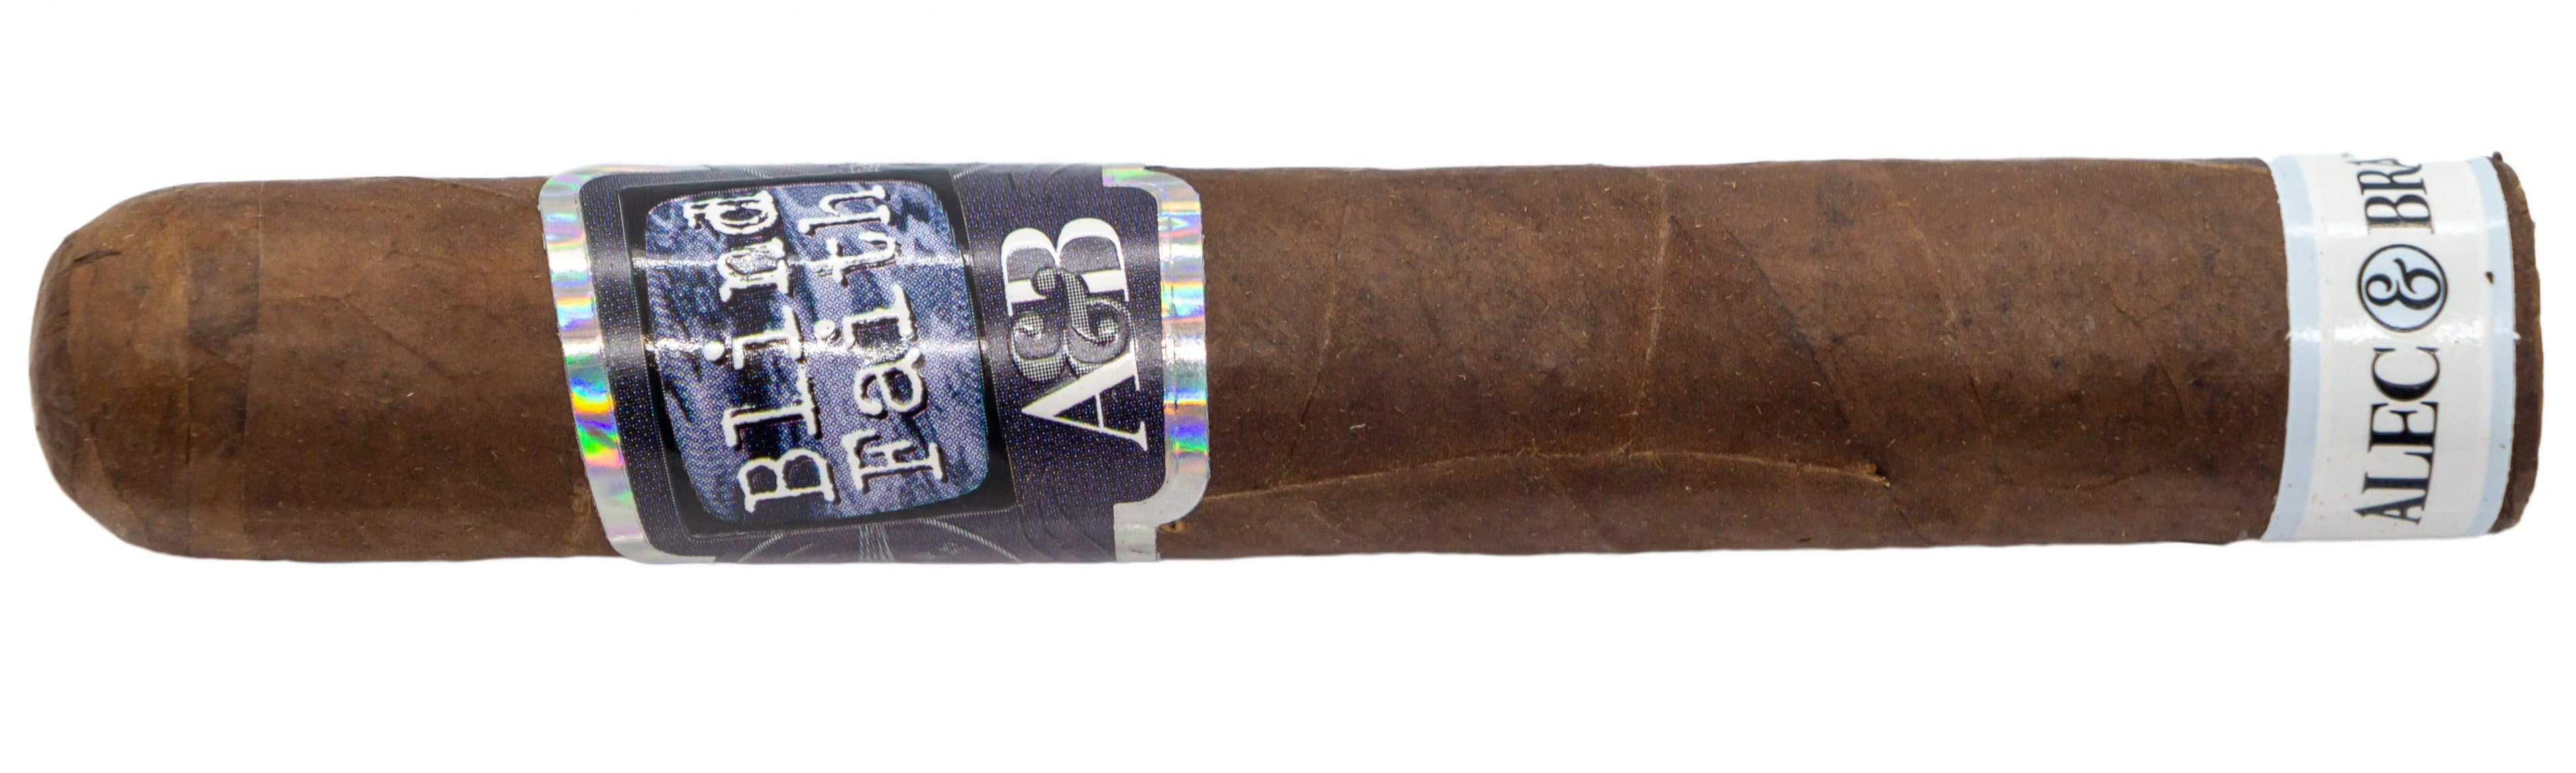 aquatico 45 cigar review